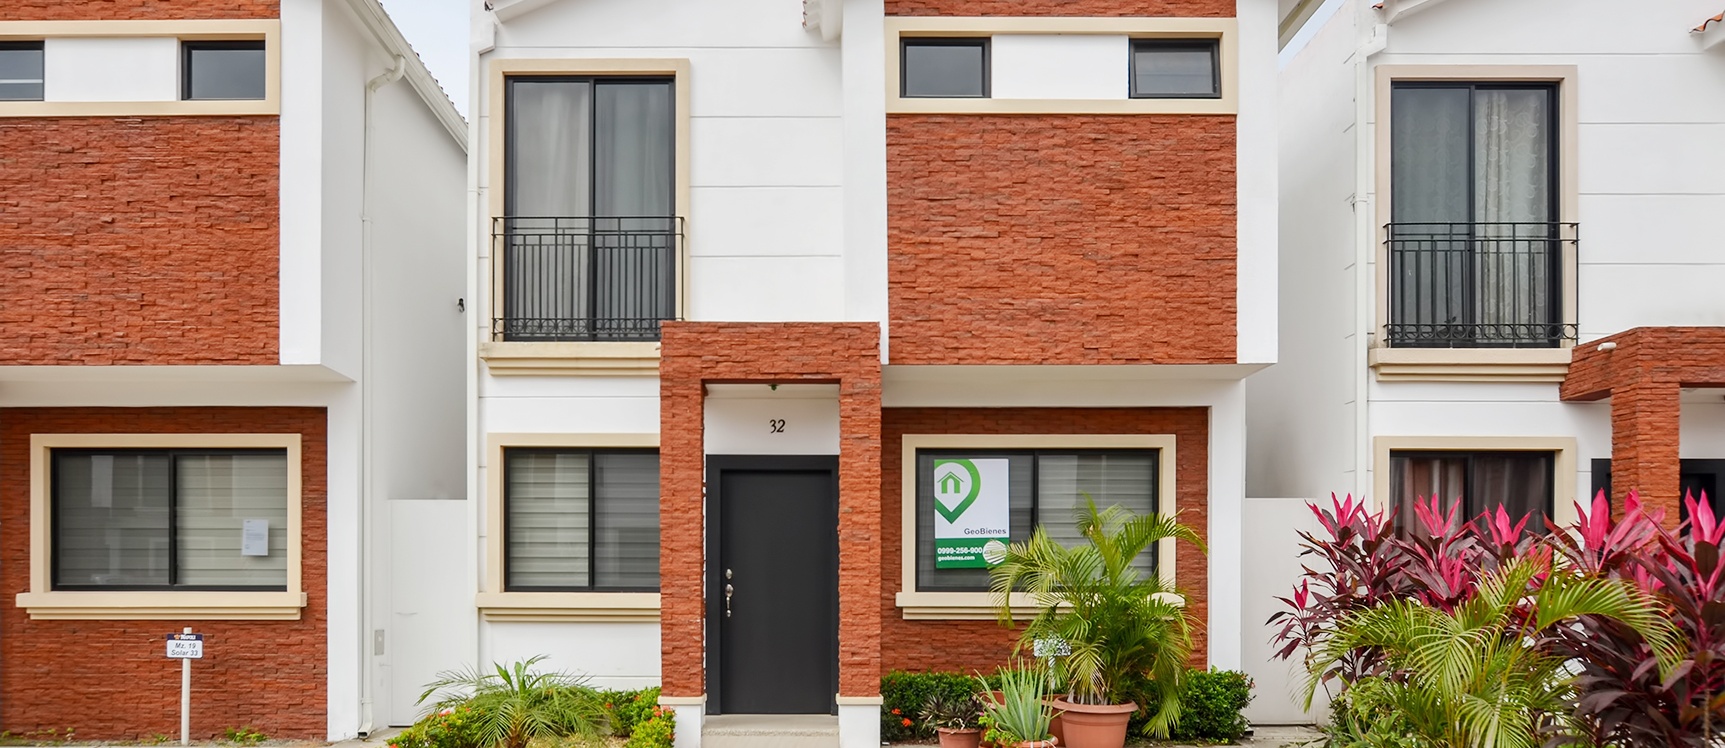 GeoBienes - Casa en alquiler en Urbanización Napoli sector Vía a Samborondón - Plusvalia Guayaquil Casas de venta y alquiler Inmobiliaria Ecuador